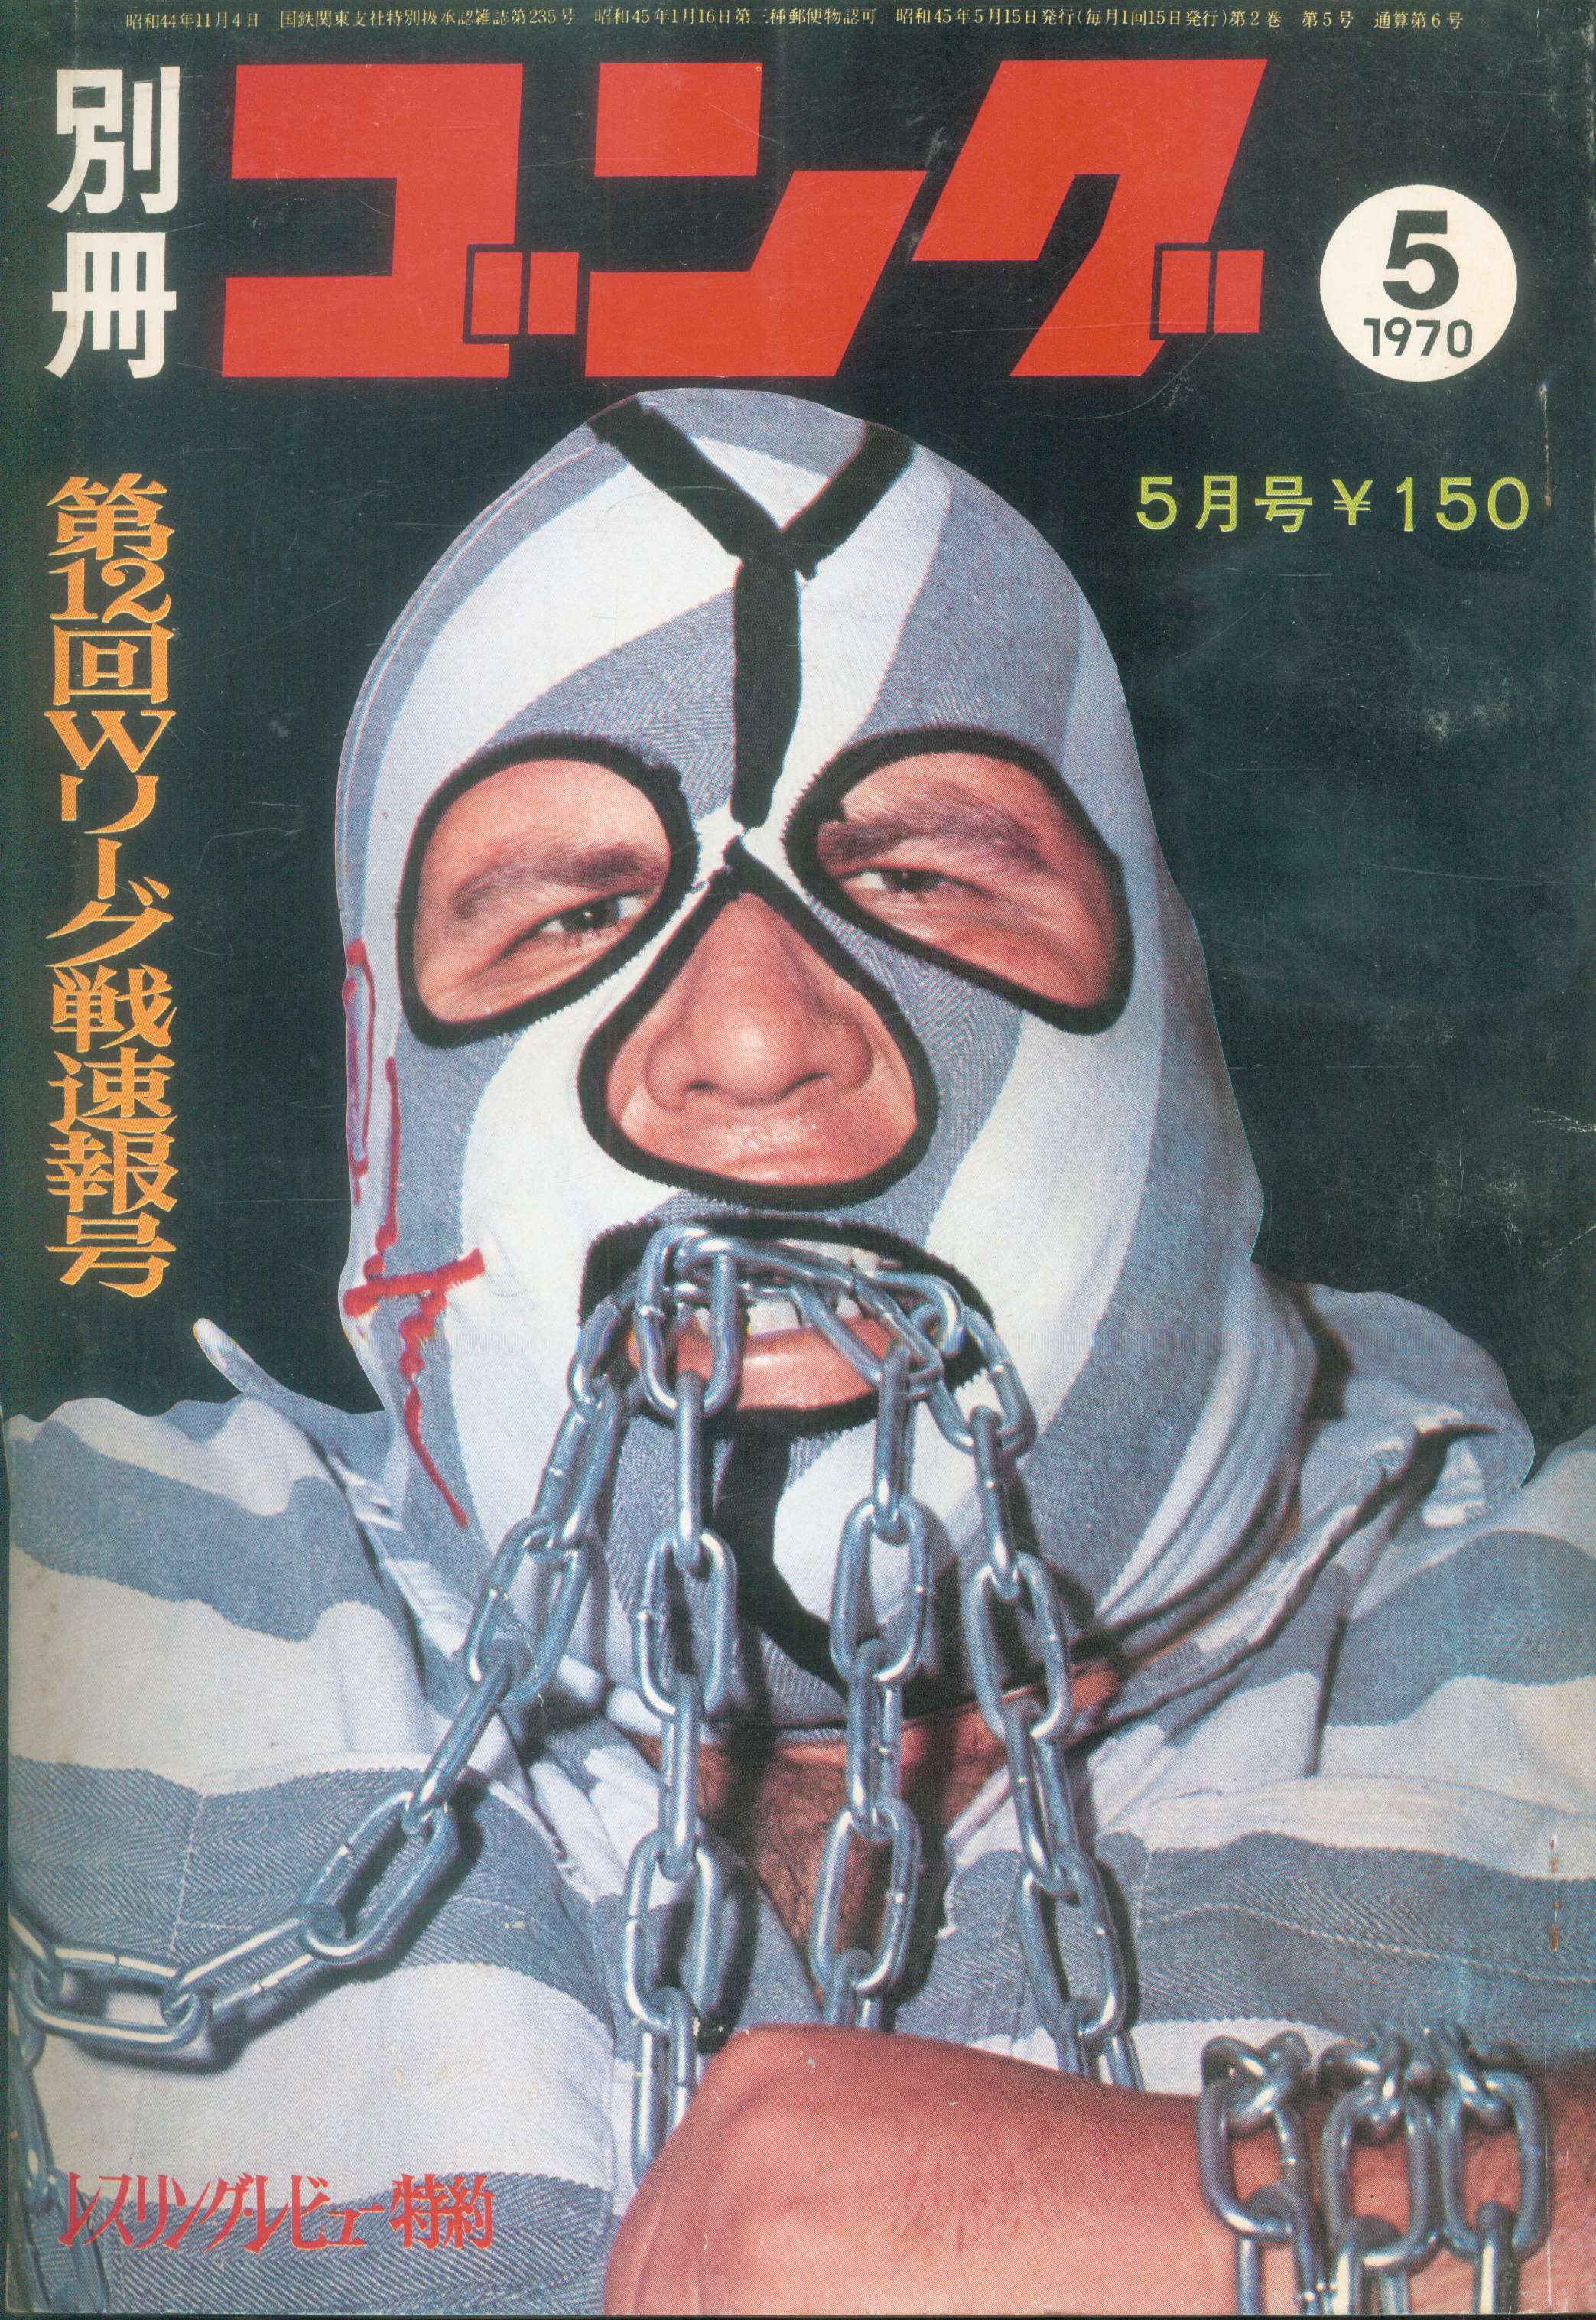 「ゴング誌」昭和45(1970)年全号コンプリート